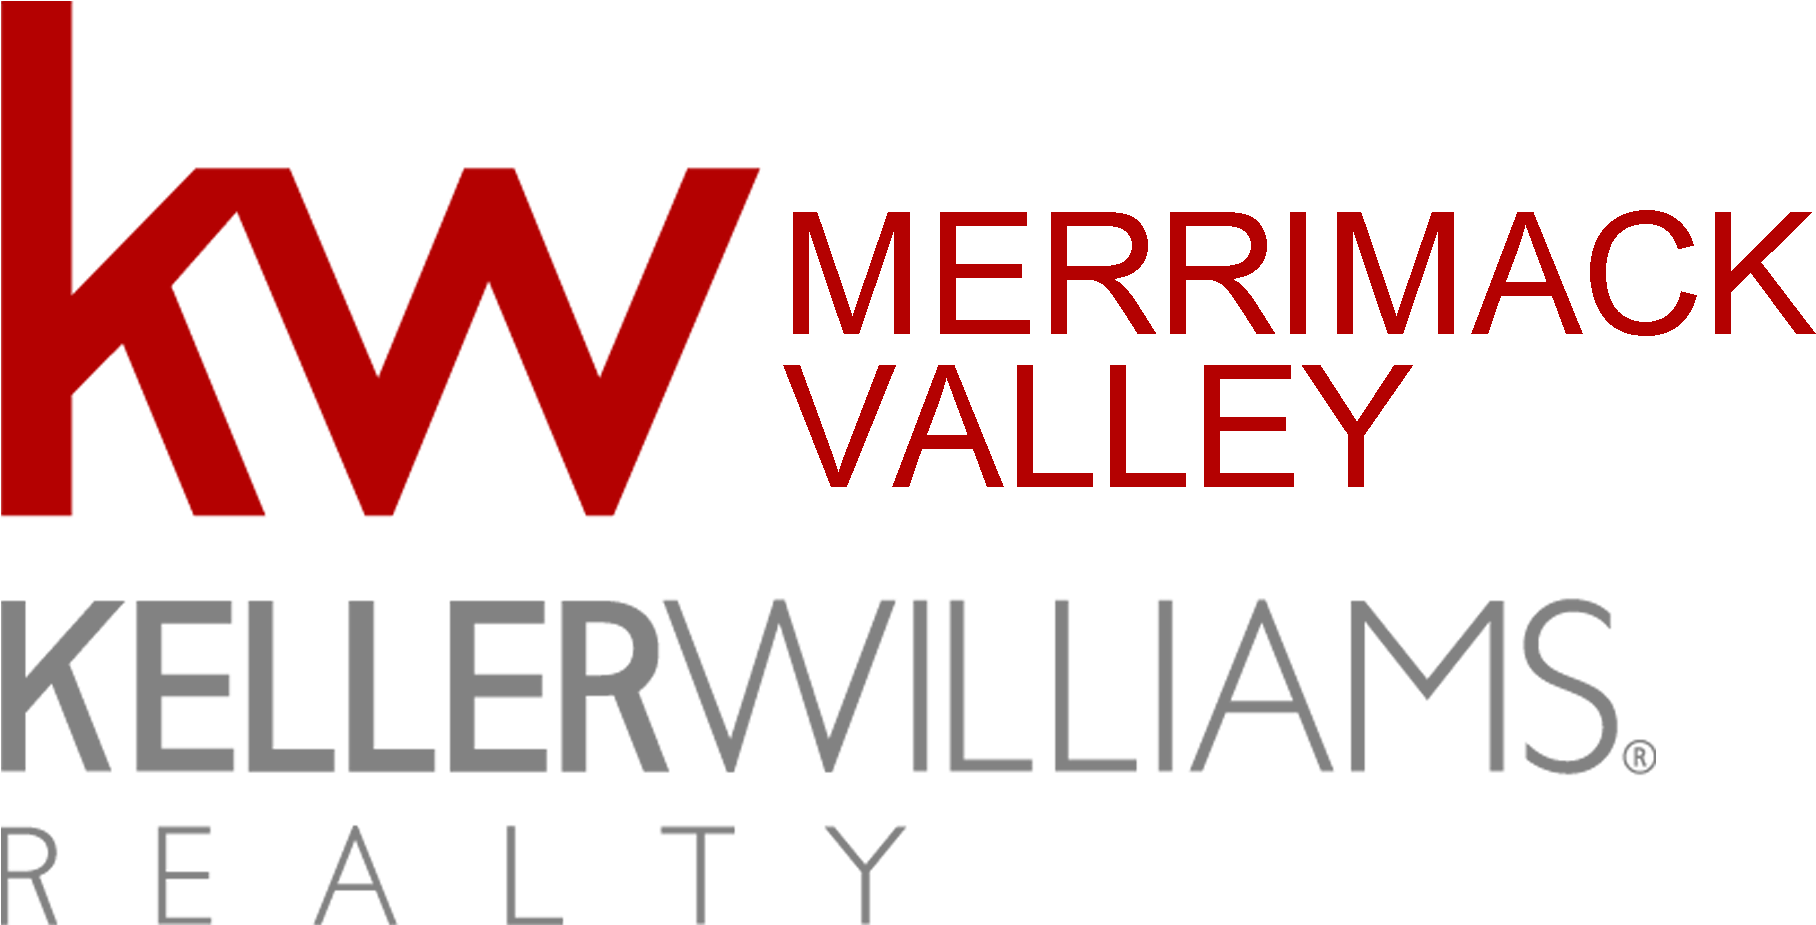 Keller Williams Merrimack Valley - Keller Williams Lifestyles Realty (2000x1021), Png Download